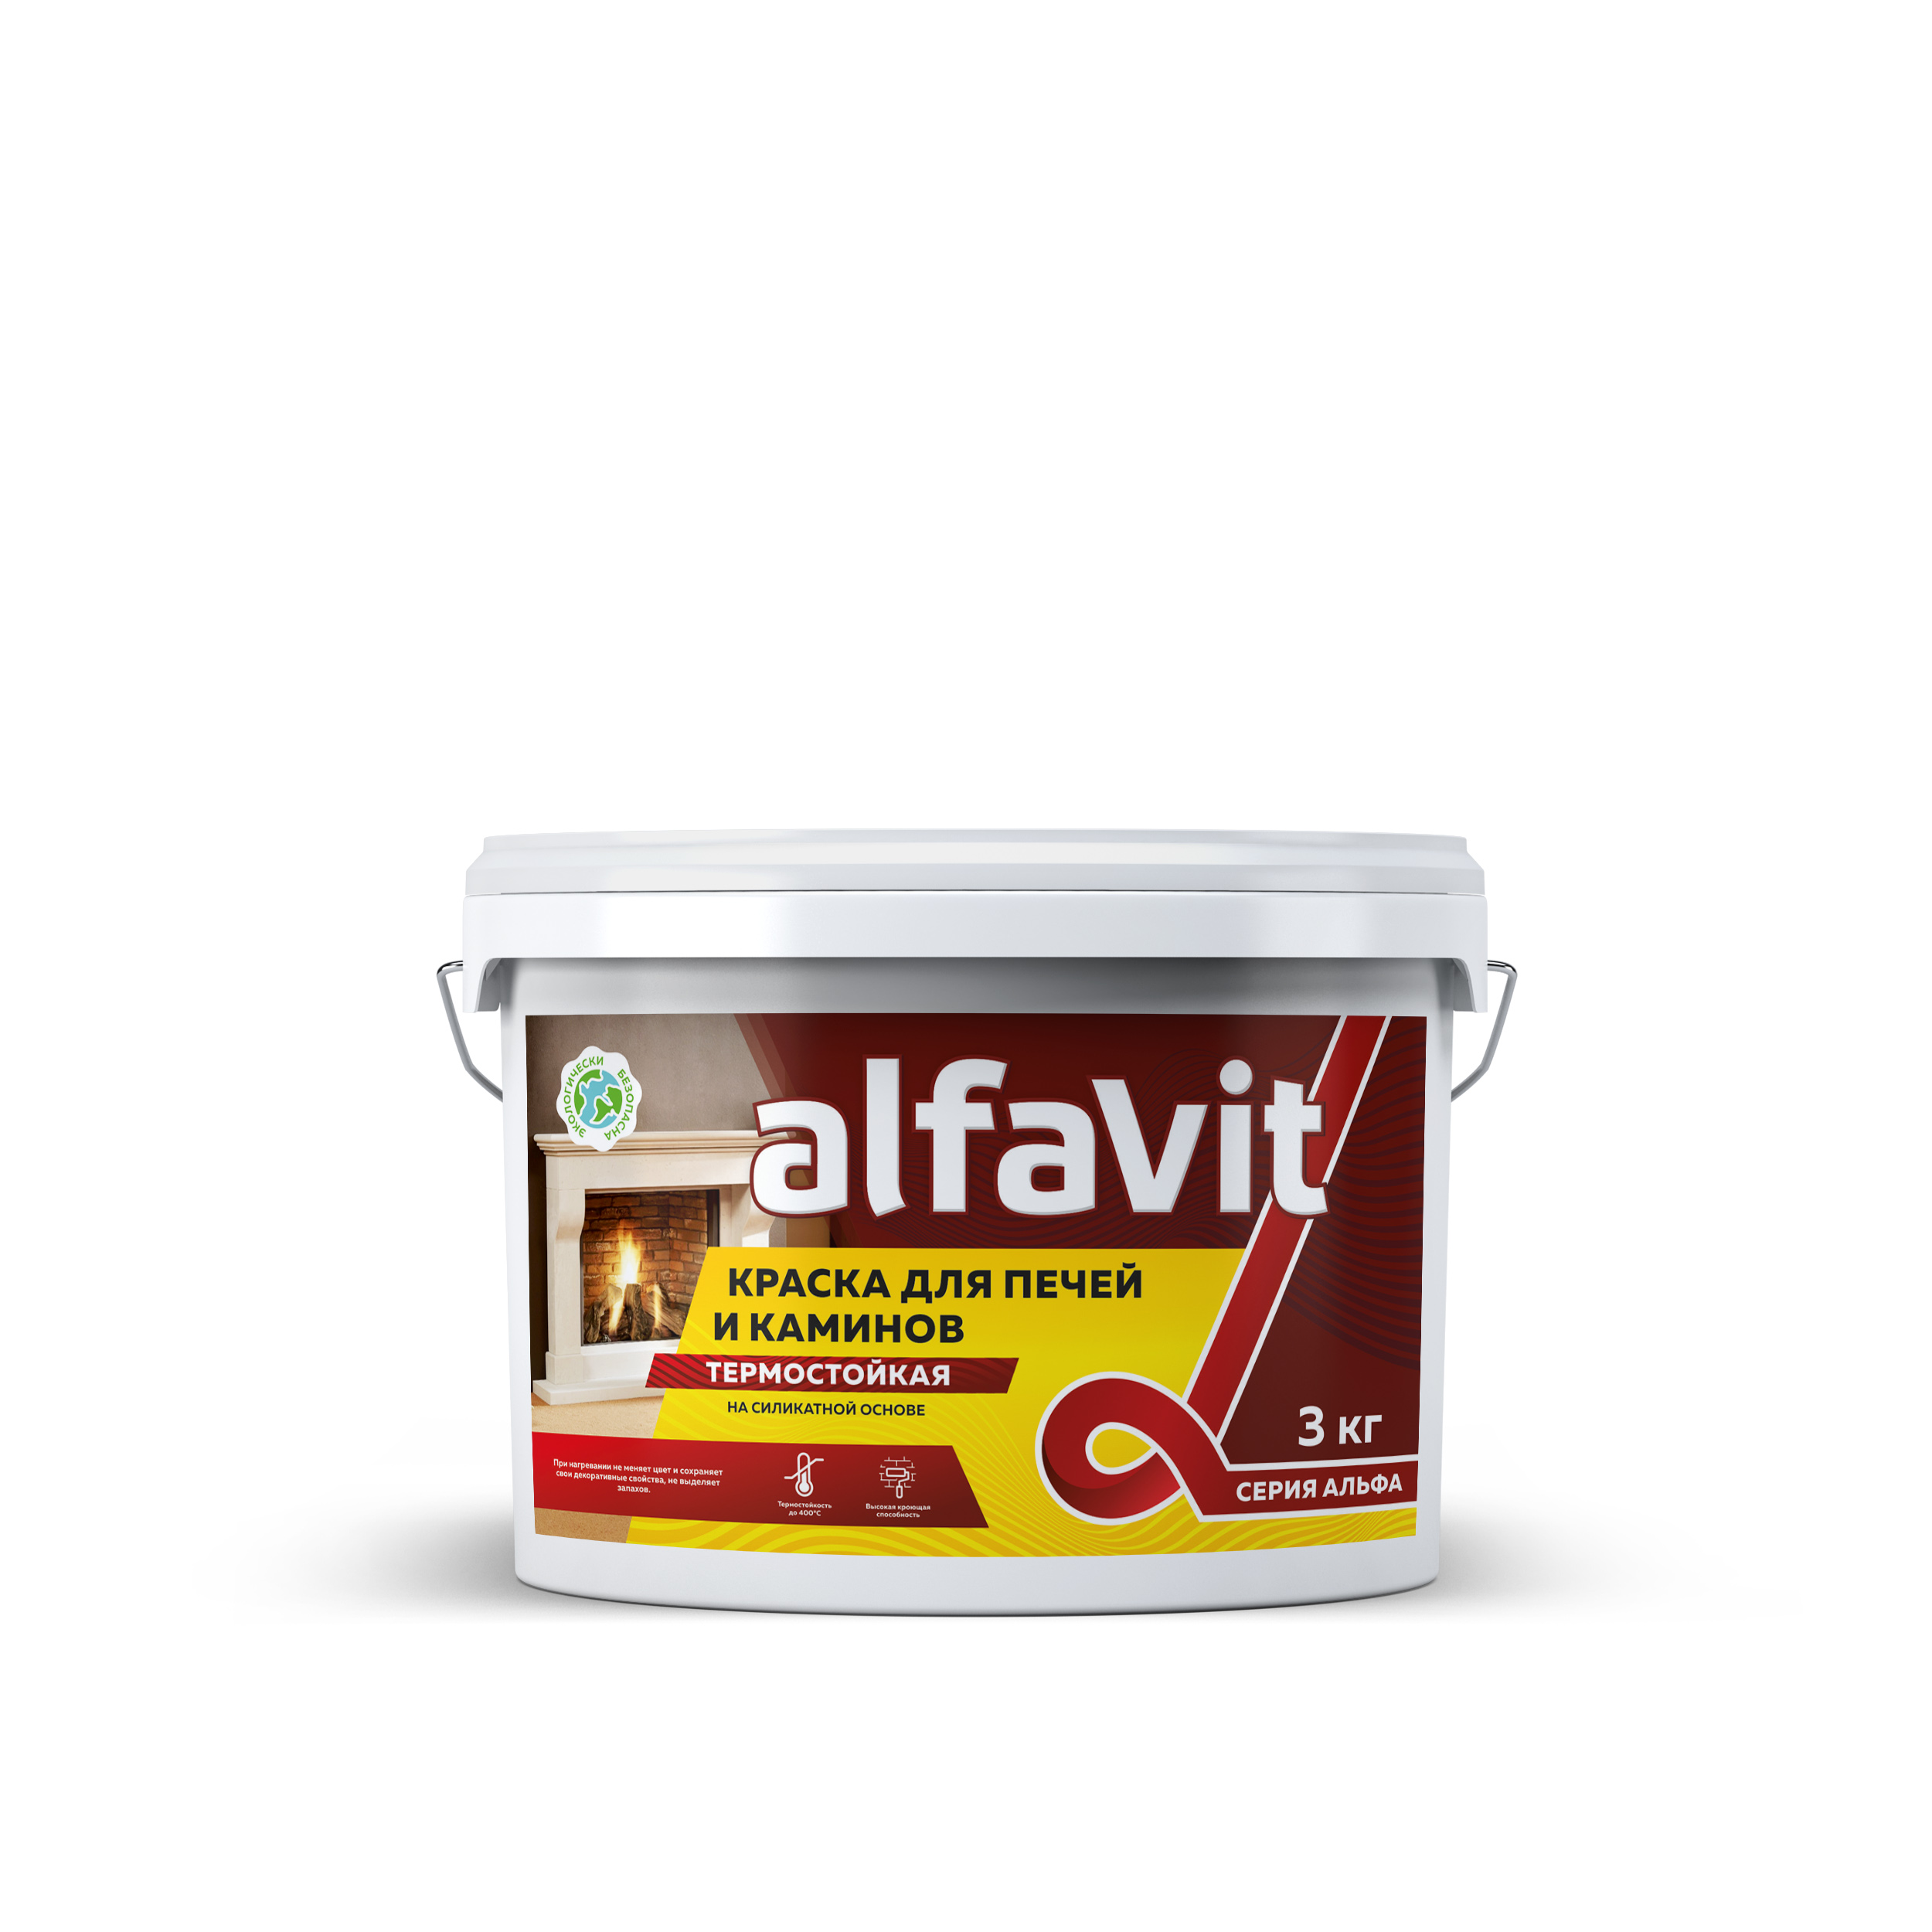 Краска для печей и каминов Alfavit серия Альфа, термостойкая, белая, 3 кг воднодисперсионная термостойкая краска для печей и каминов safora